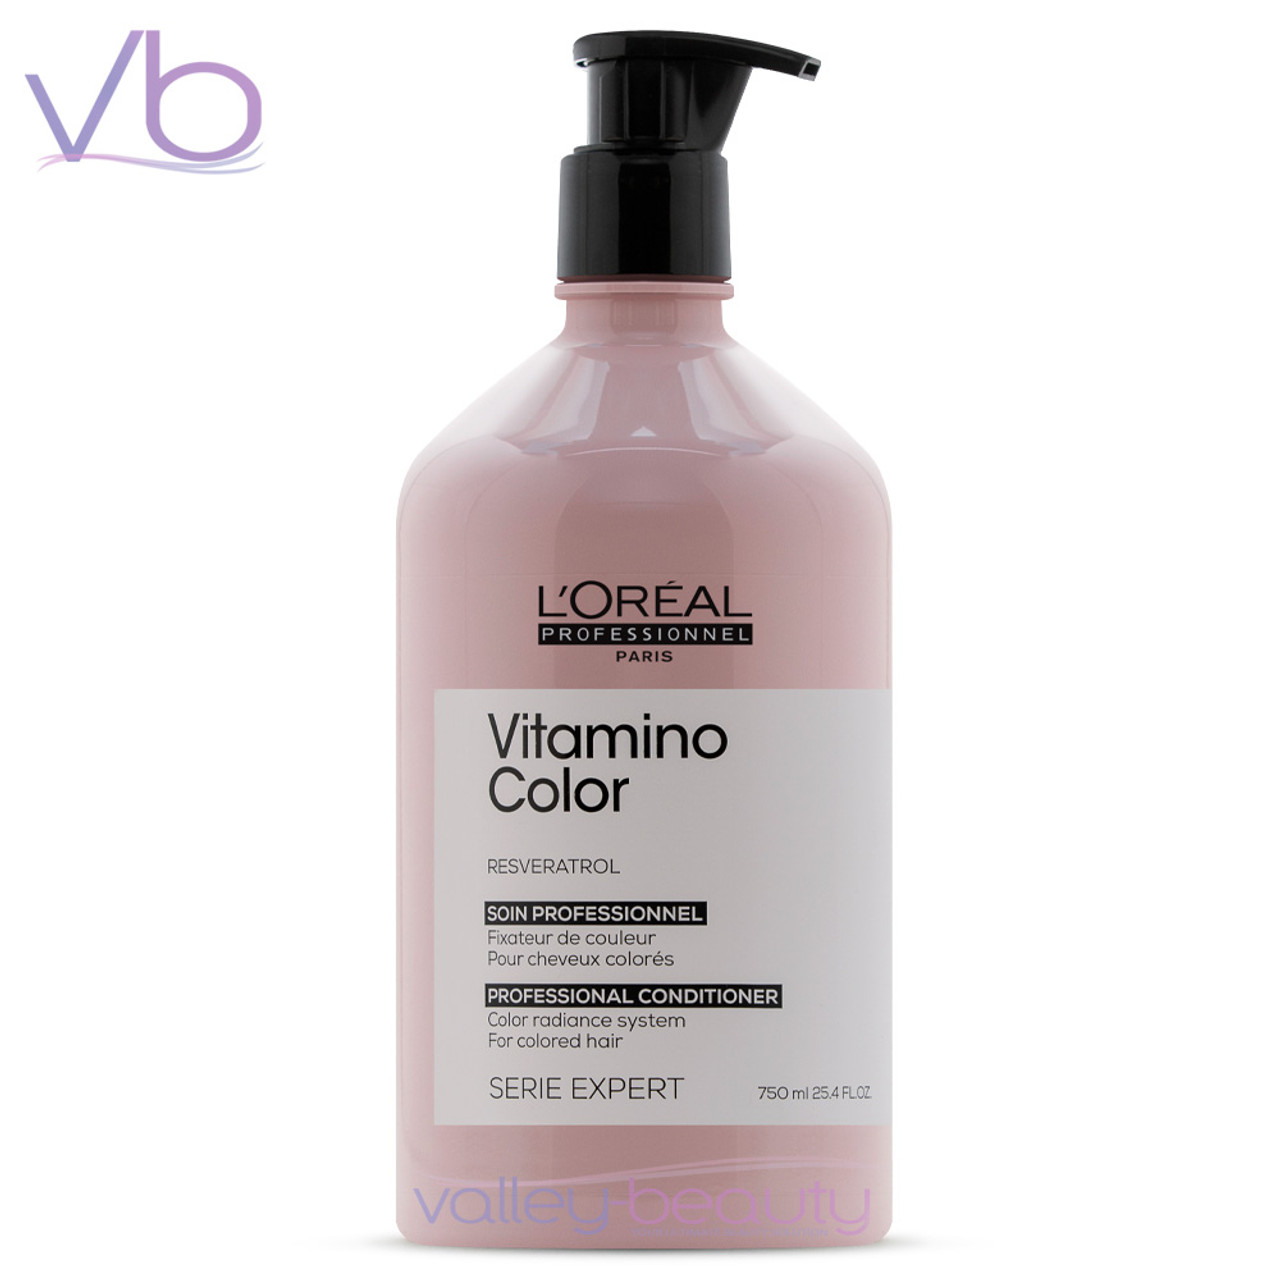 L'Oreal L’Oreal Professionnel Serie Expert Resveratrol Vitamino Color Conditioner | Color Radiance Conditioner, 750ml